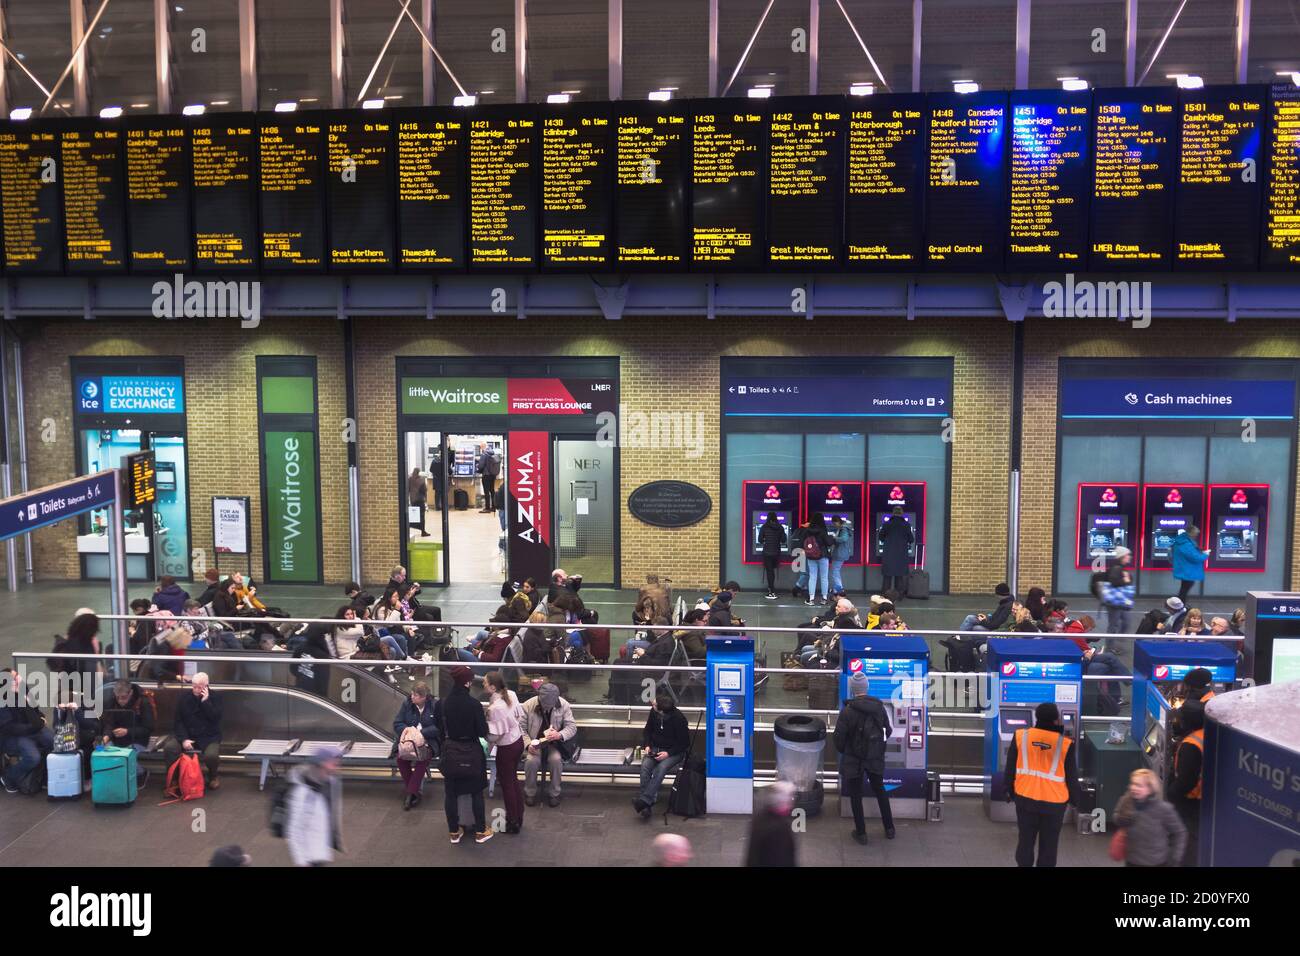 départ du terminus du chemin de fer dh KINGS CROSS-STATION LONDON Concourse boards montez à bord passagers angleterre royaume-uni Banque D'Images